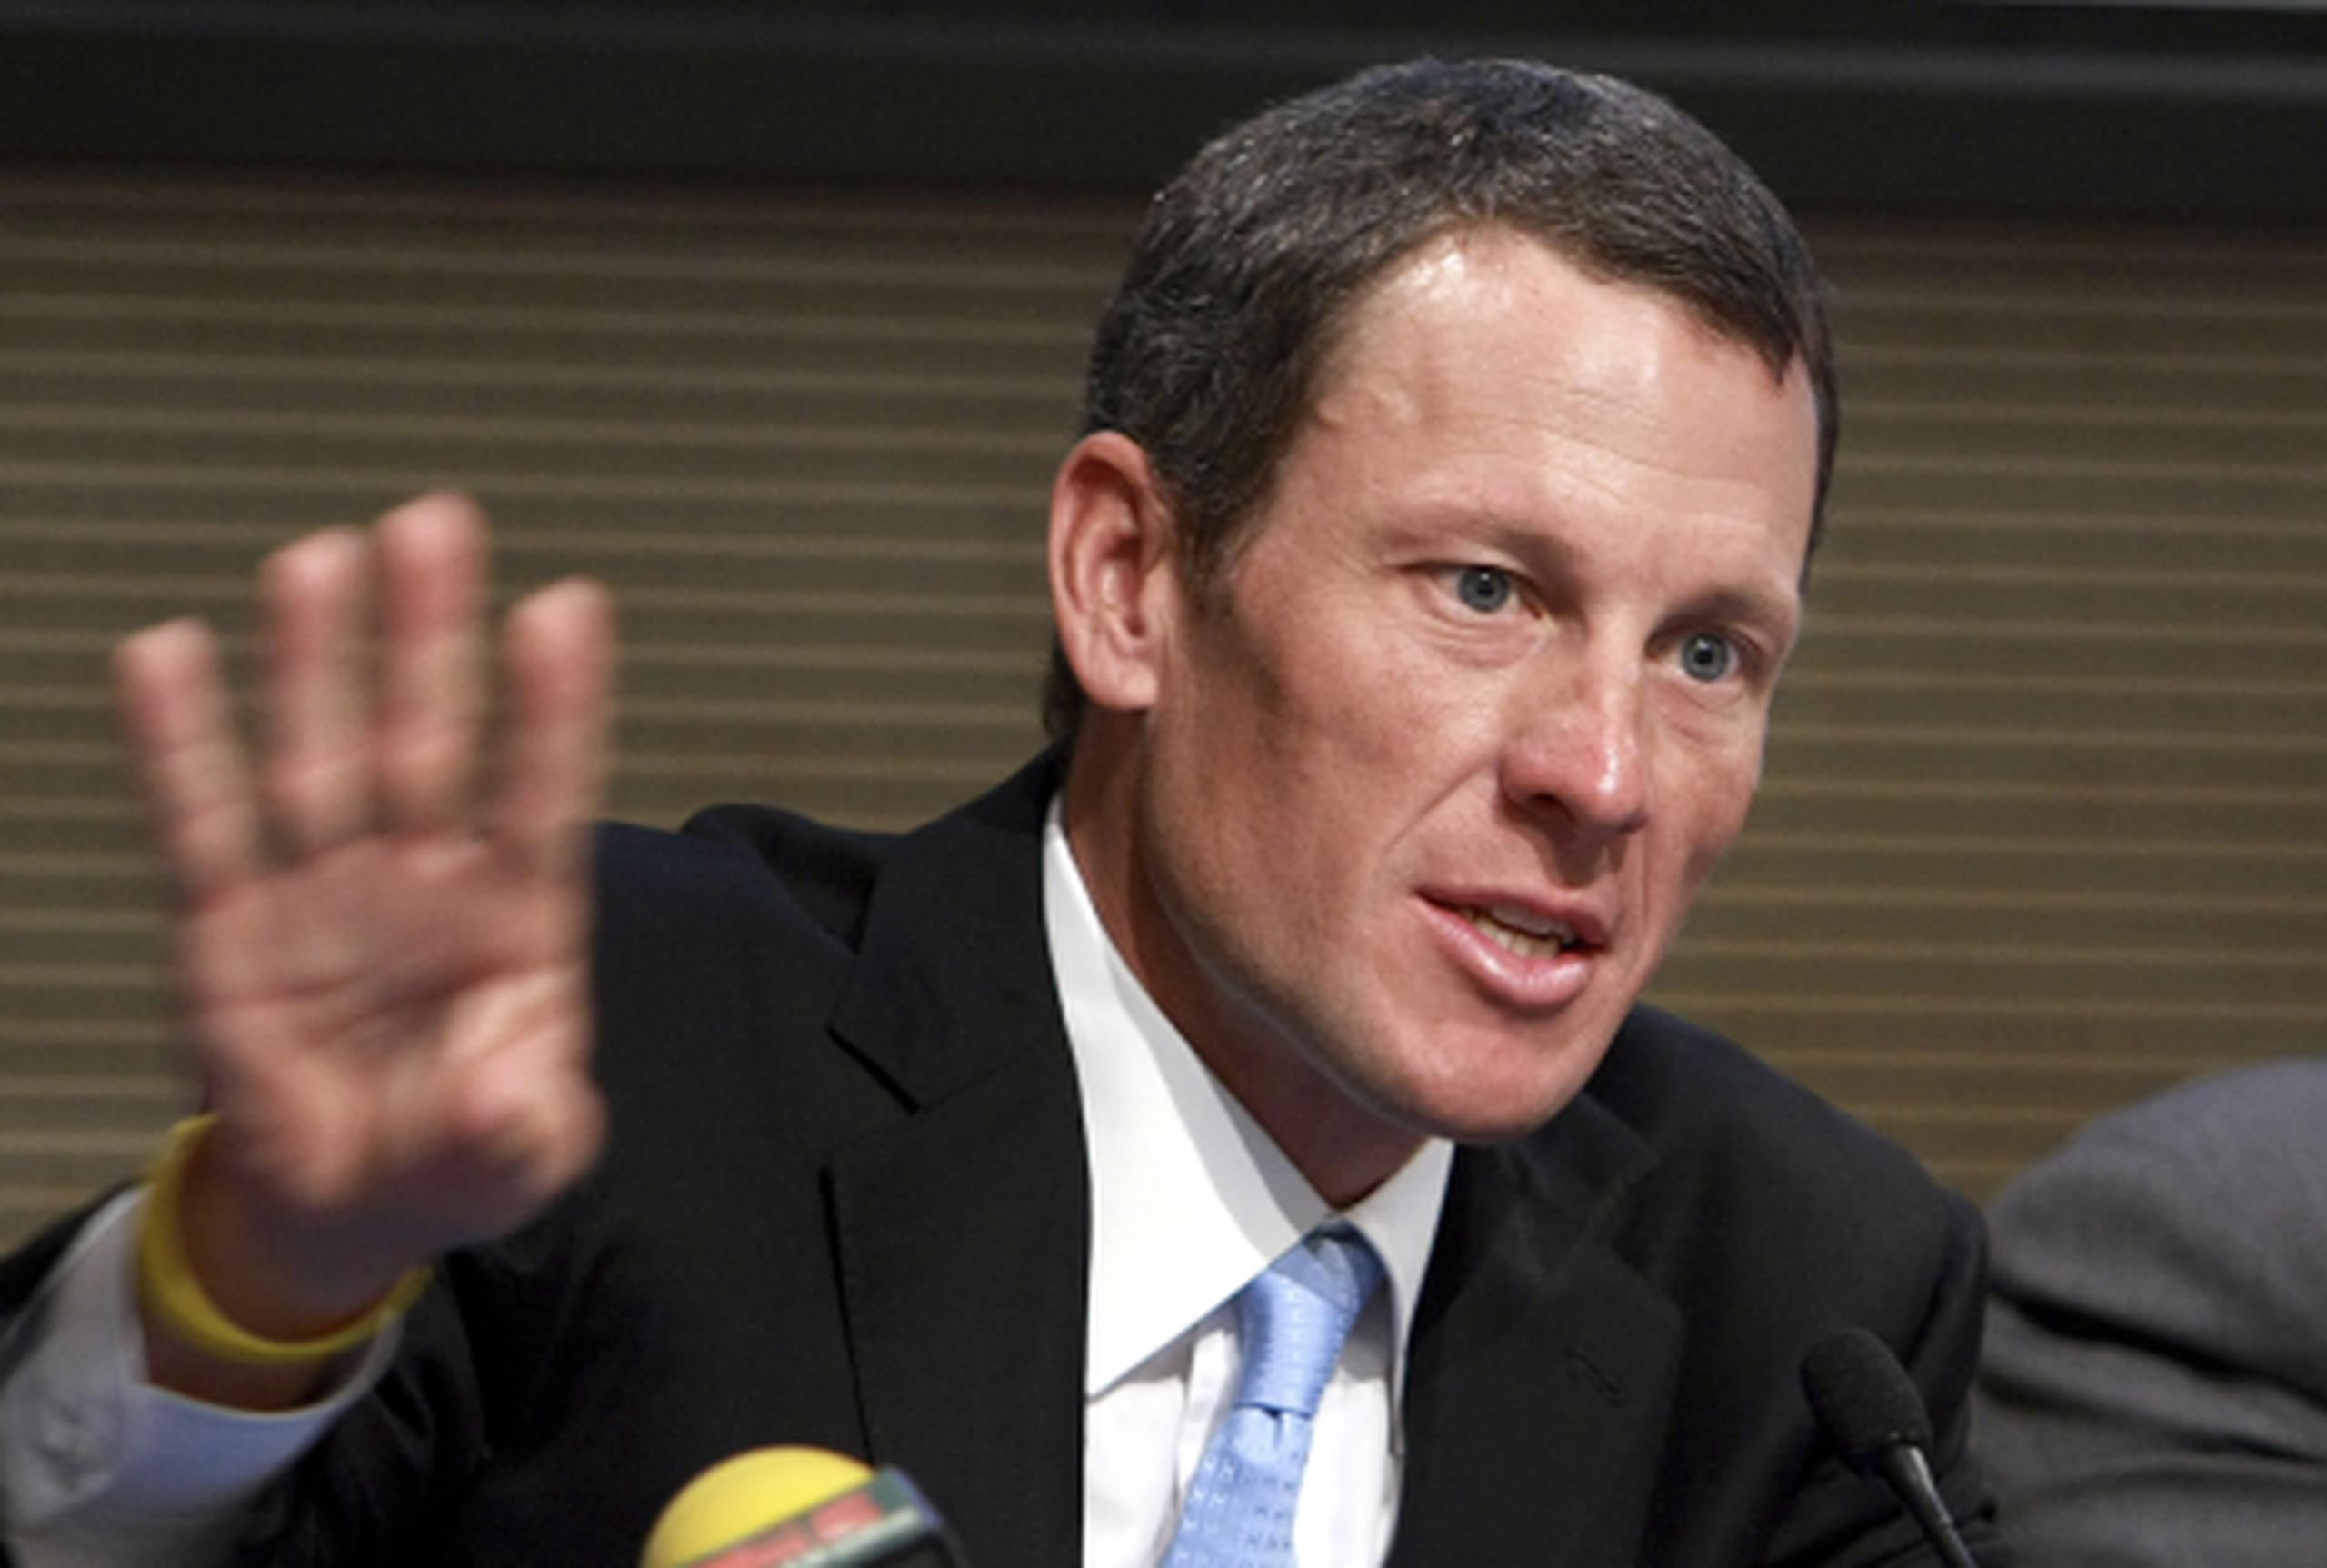 Armstrong encara varias demandas, y testificar bajo juramento ante la USADA podría haberlo expuesto a más problemas legales. (AP)